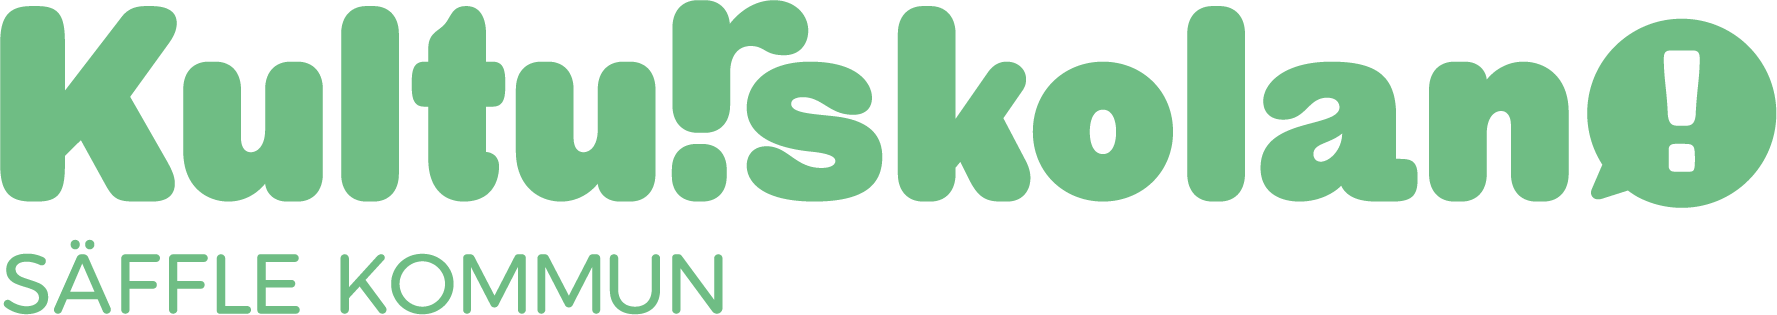 Kulurskolans logotyp